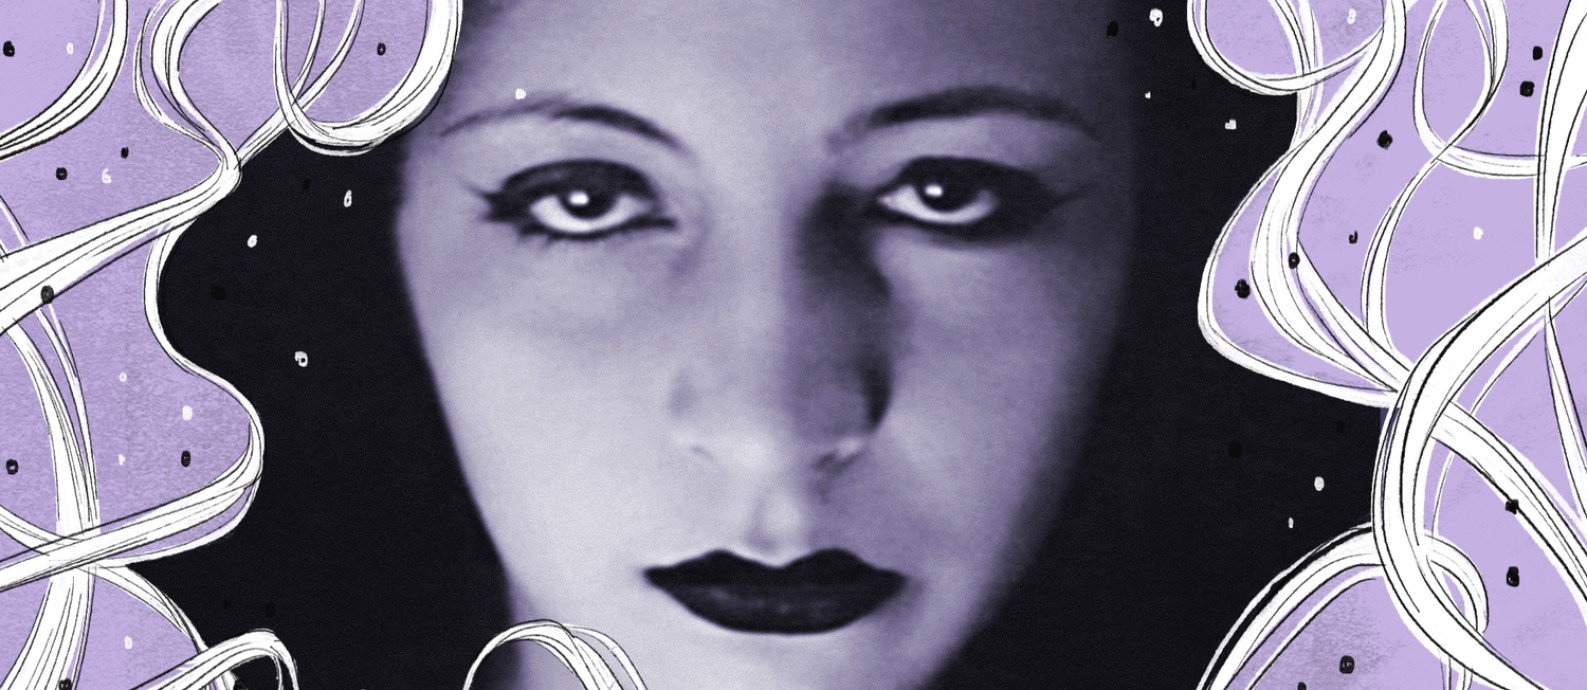 Autobiografia Precoce, escrita por Pagu em 1940 mostra que a condição feminina não é construída sem dor e dialoga com a atual geração de feministas Foto: Acervo Lúcia Teixeira/Centro Pagu Unisanta